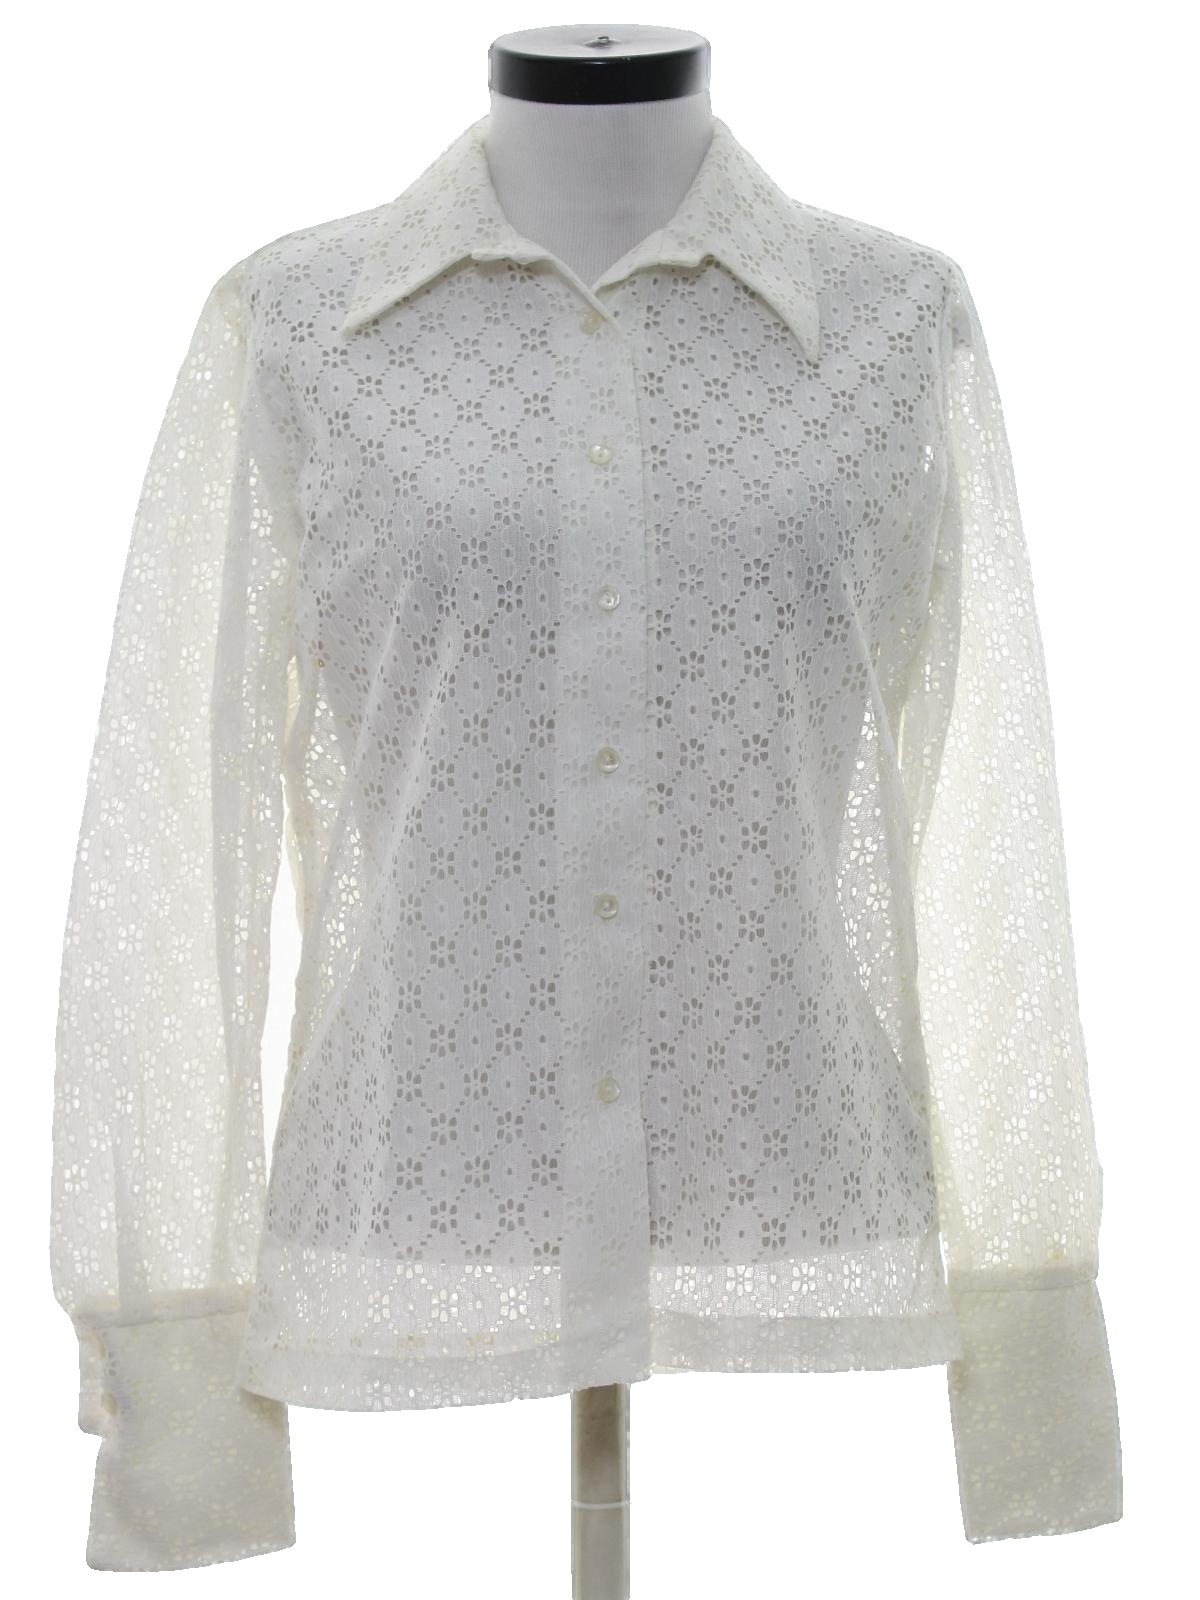 Retro 1970's Shirt (Teddi) : 70s -Teddi- Womens white polyester button ...